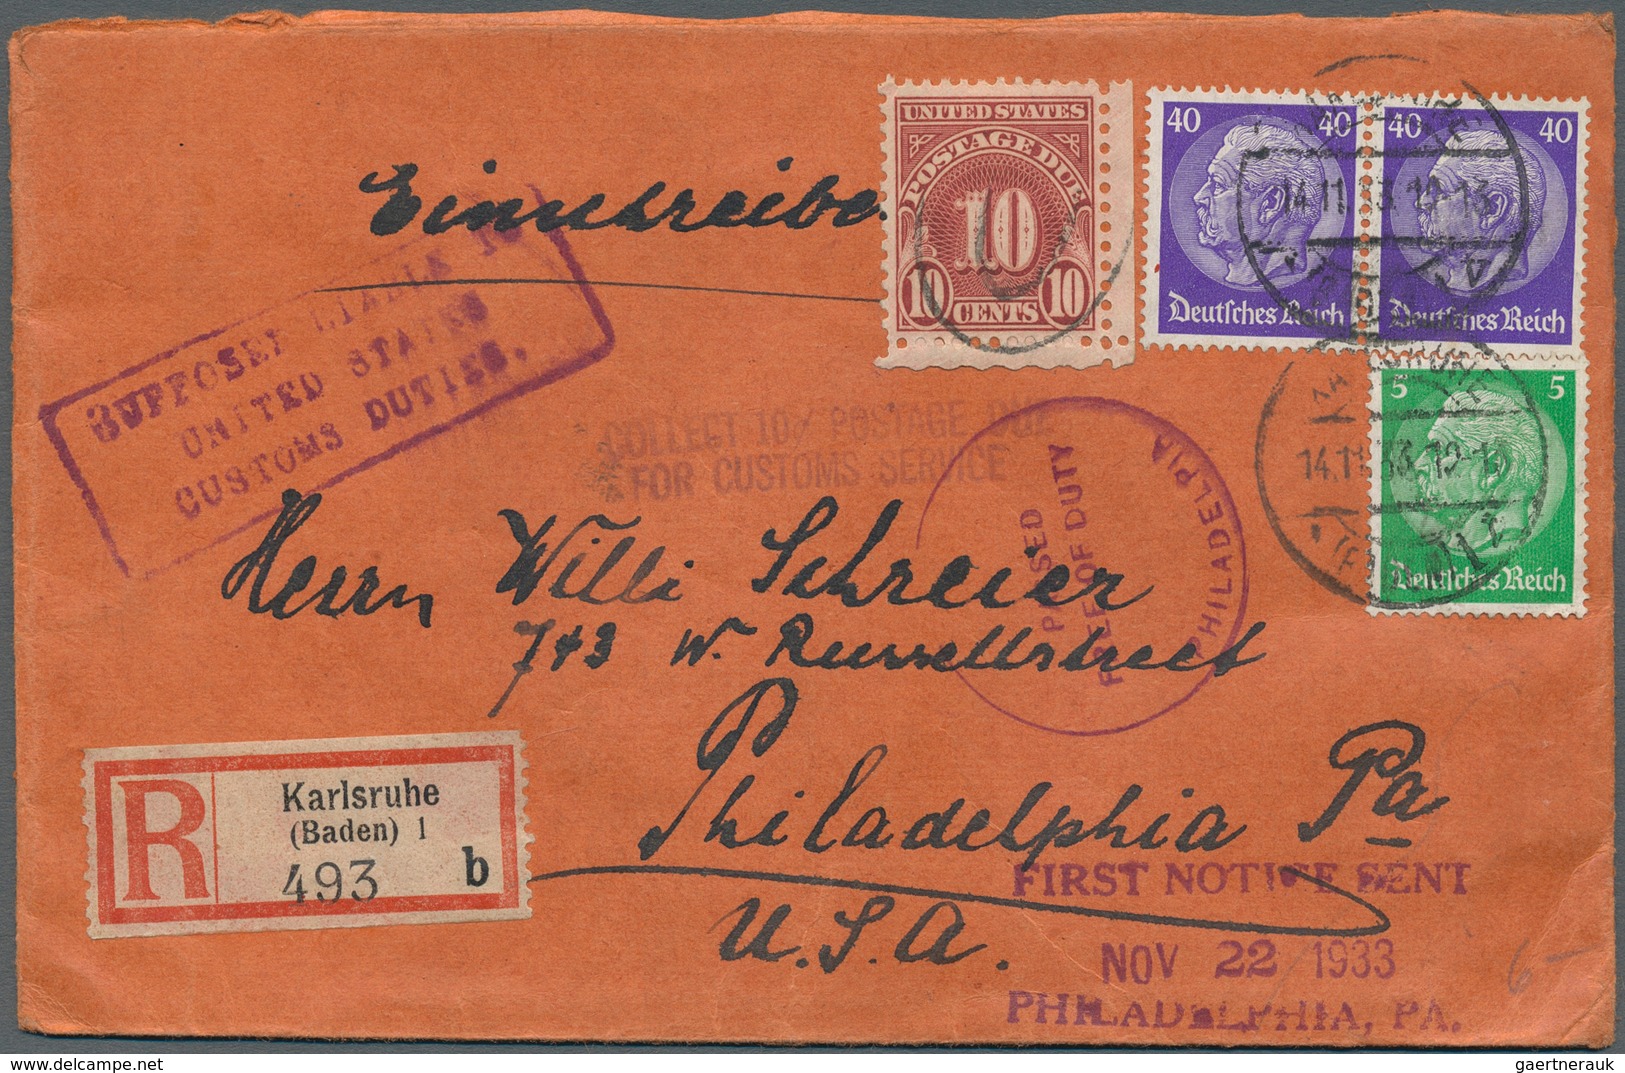 31620 Deutsches Reich - 3. Reich: 1933/1945, vielseitige Partie von ca. 250 Briefen, Karten und Ganzsachen